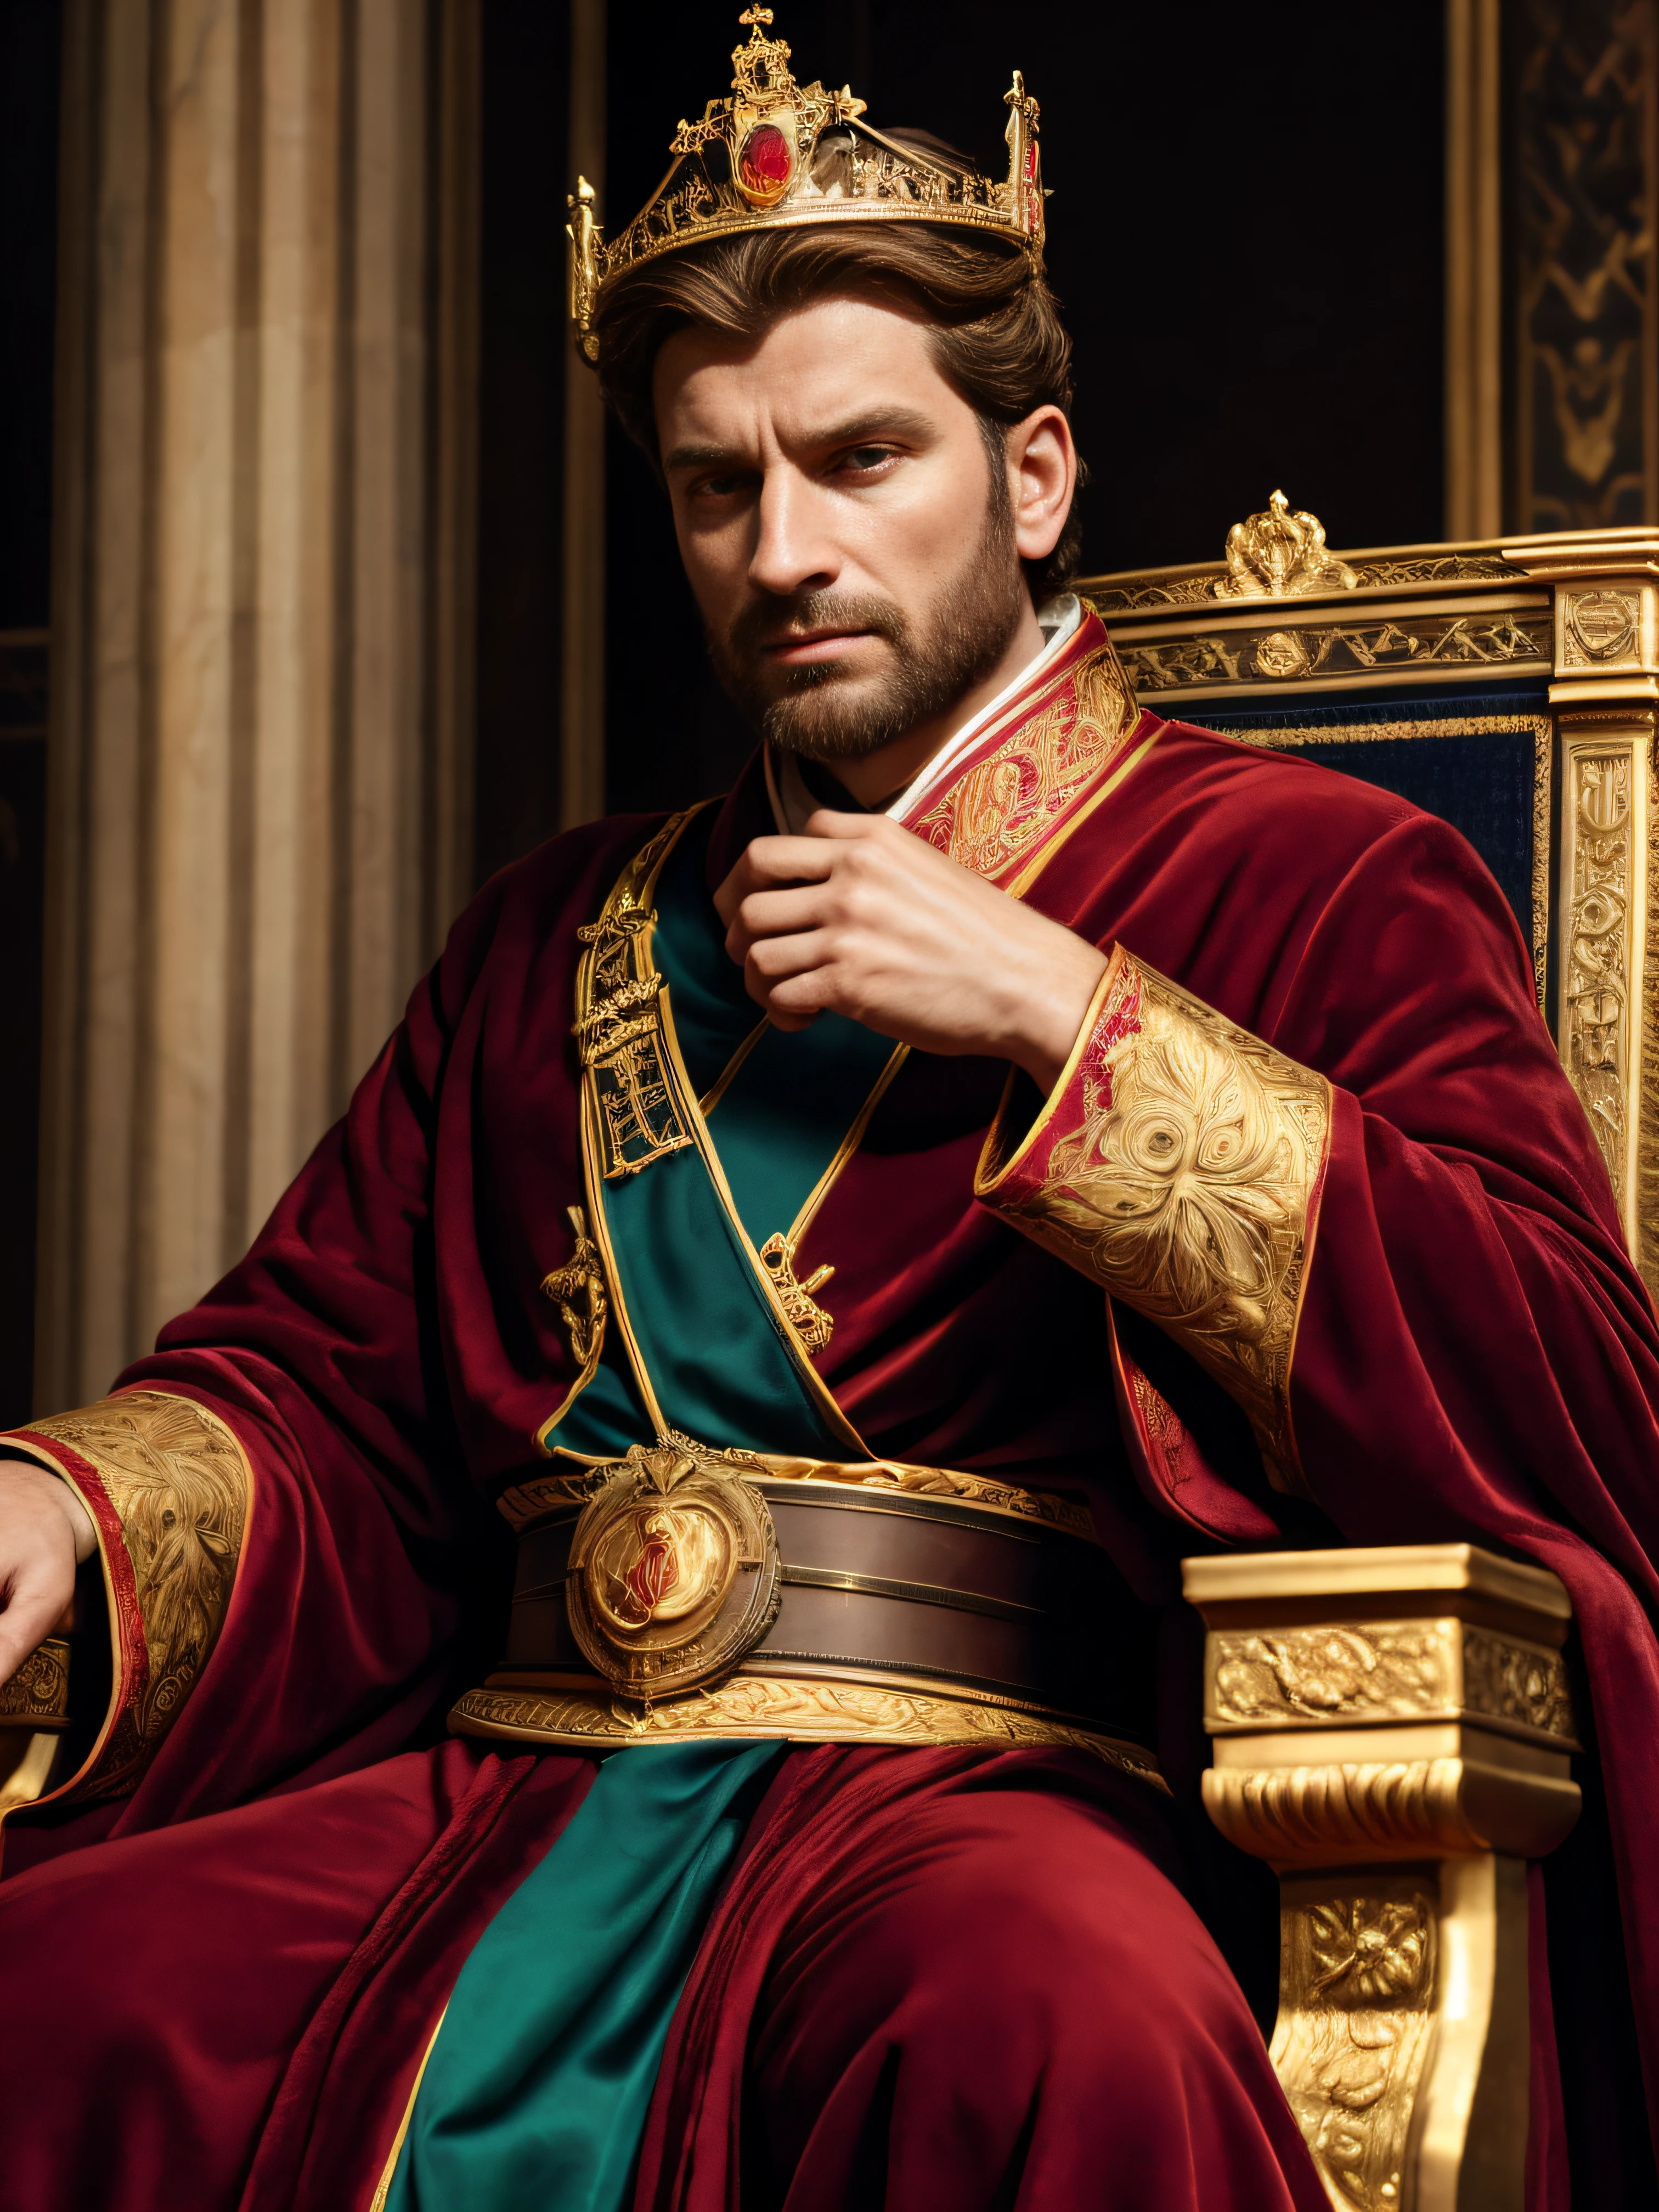 君士坦丁大帝,最好的品質,超詳細,逼真的,肖像,繪畫,罗马皇帝,聰明又強大,強健的下顎線,犀利的眼光,自信的表達,情況々穿着正式服装,坐在宝座上,被權力和權威的象徵包圍,金冠,紅色天鵝絨長袍,歷史參考,大理石柱,強烈的照明,冷色調,宏偉與威嚴.